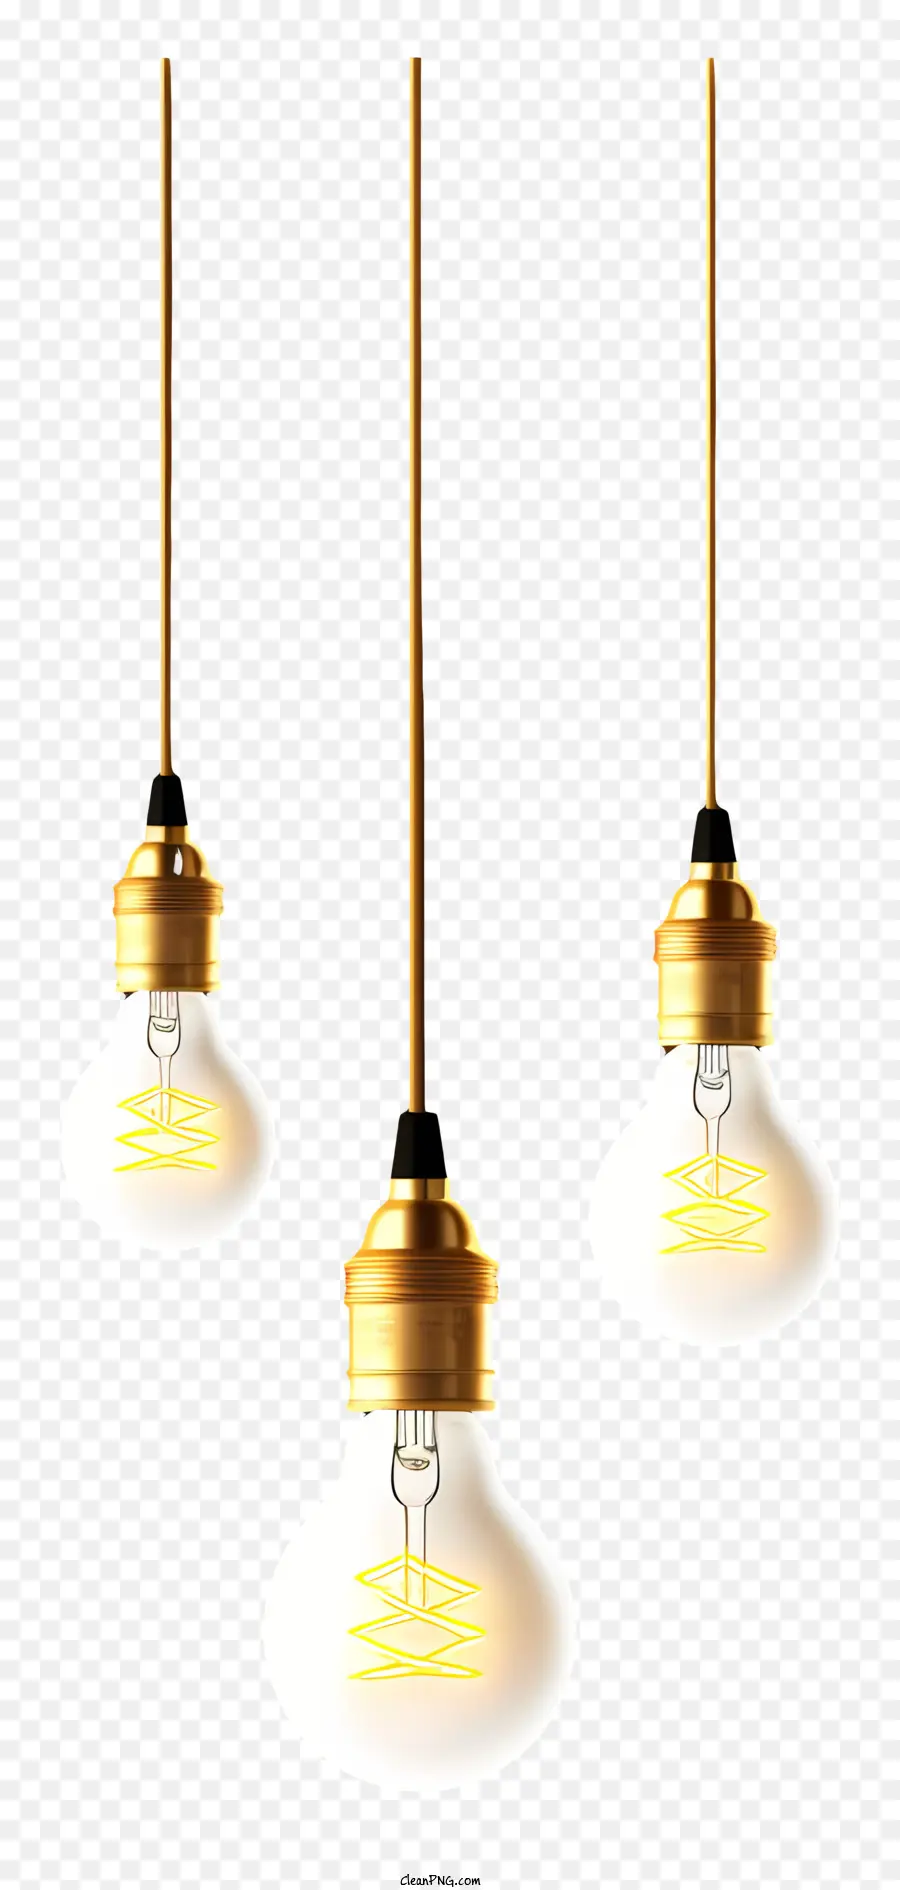 Glühbirnen hängende Glühbirnen Glühbirnen LED -Lampen warmes weißes Licht hängen - Drei Glühbirnen unterschiedlicher Größe und Farbe